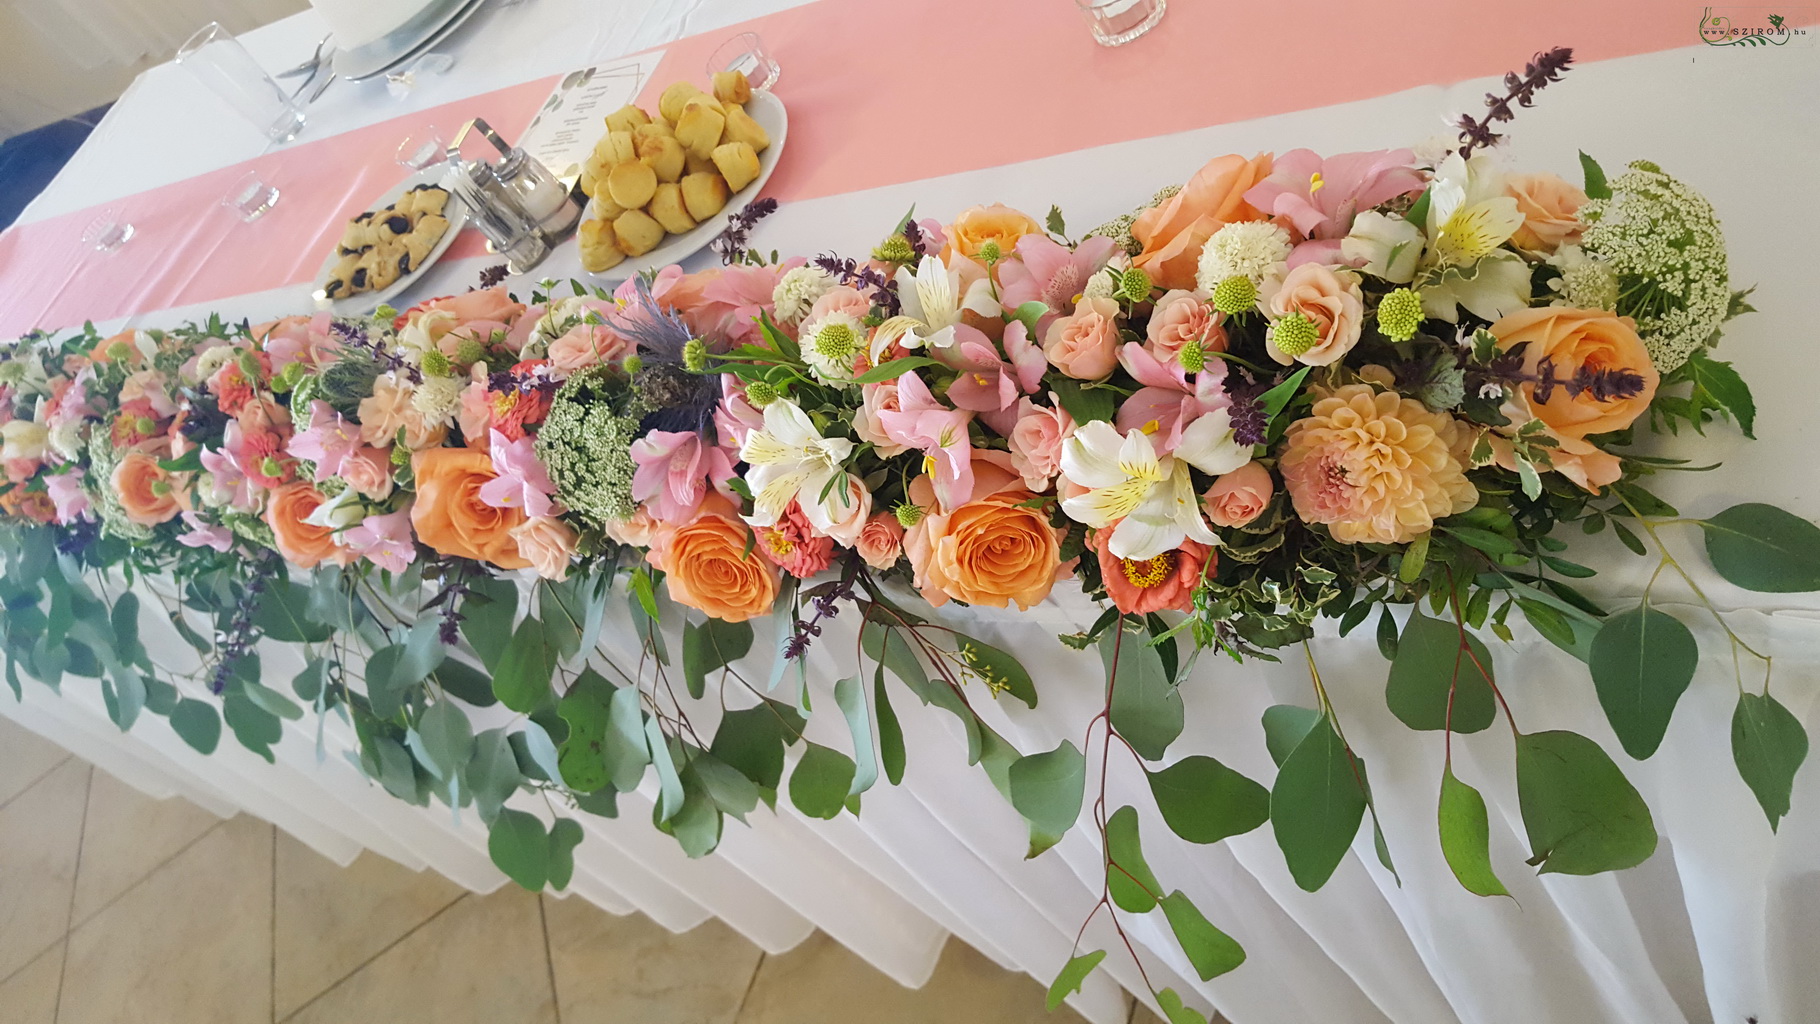 Főasztaldísz, Szent Anna Fogadó Berkenye (rózsa, bokros rózsa, inkaliliom, mezei virágok, barack, rózsaszín)